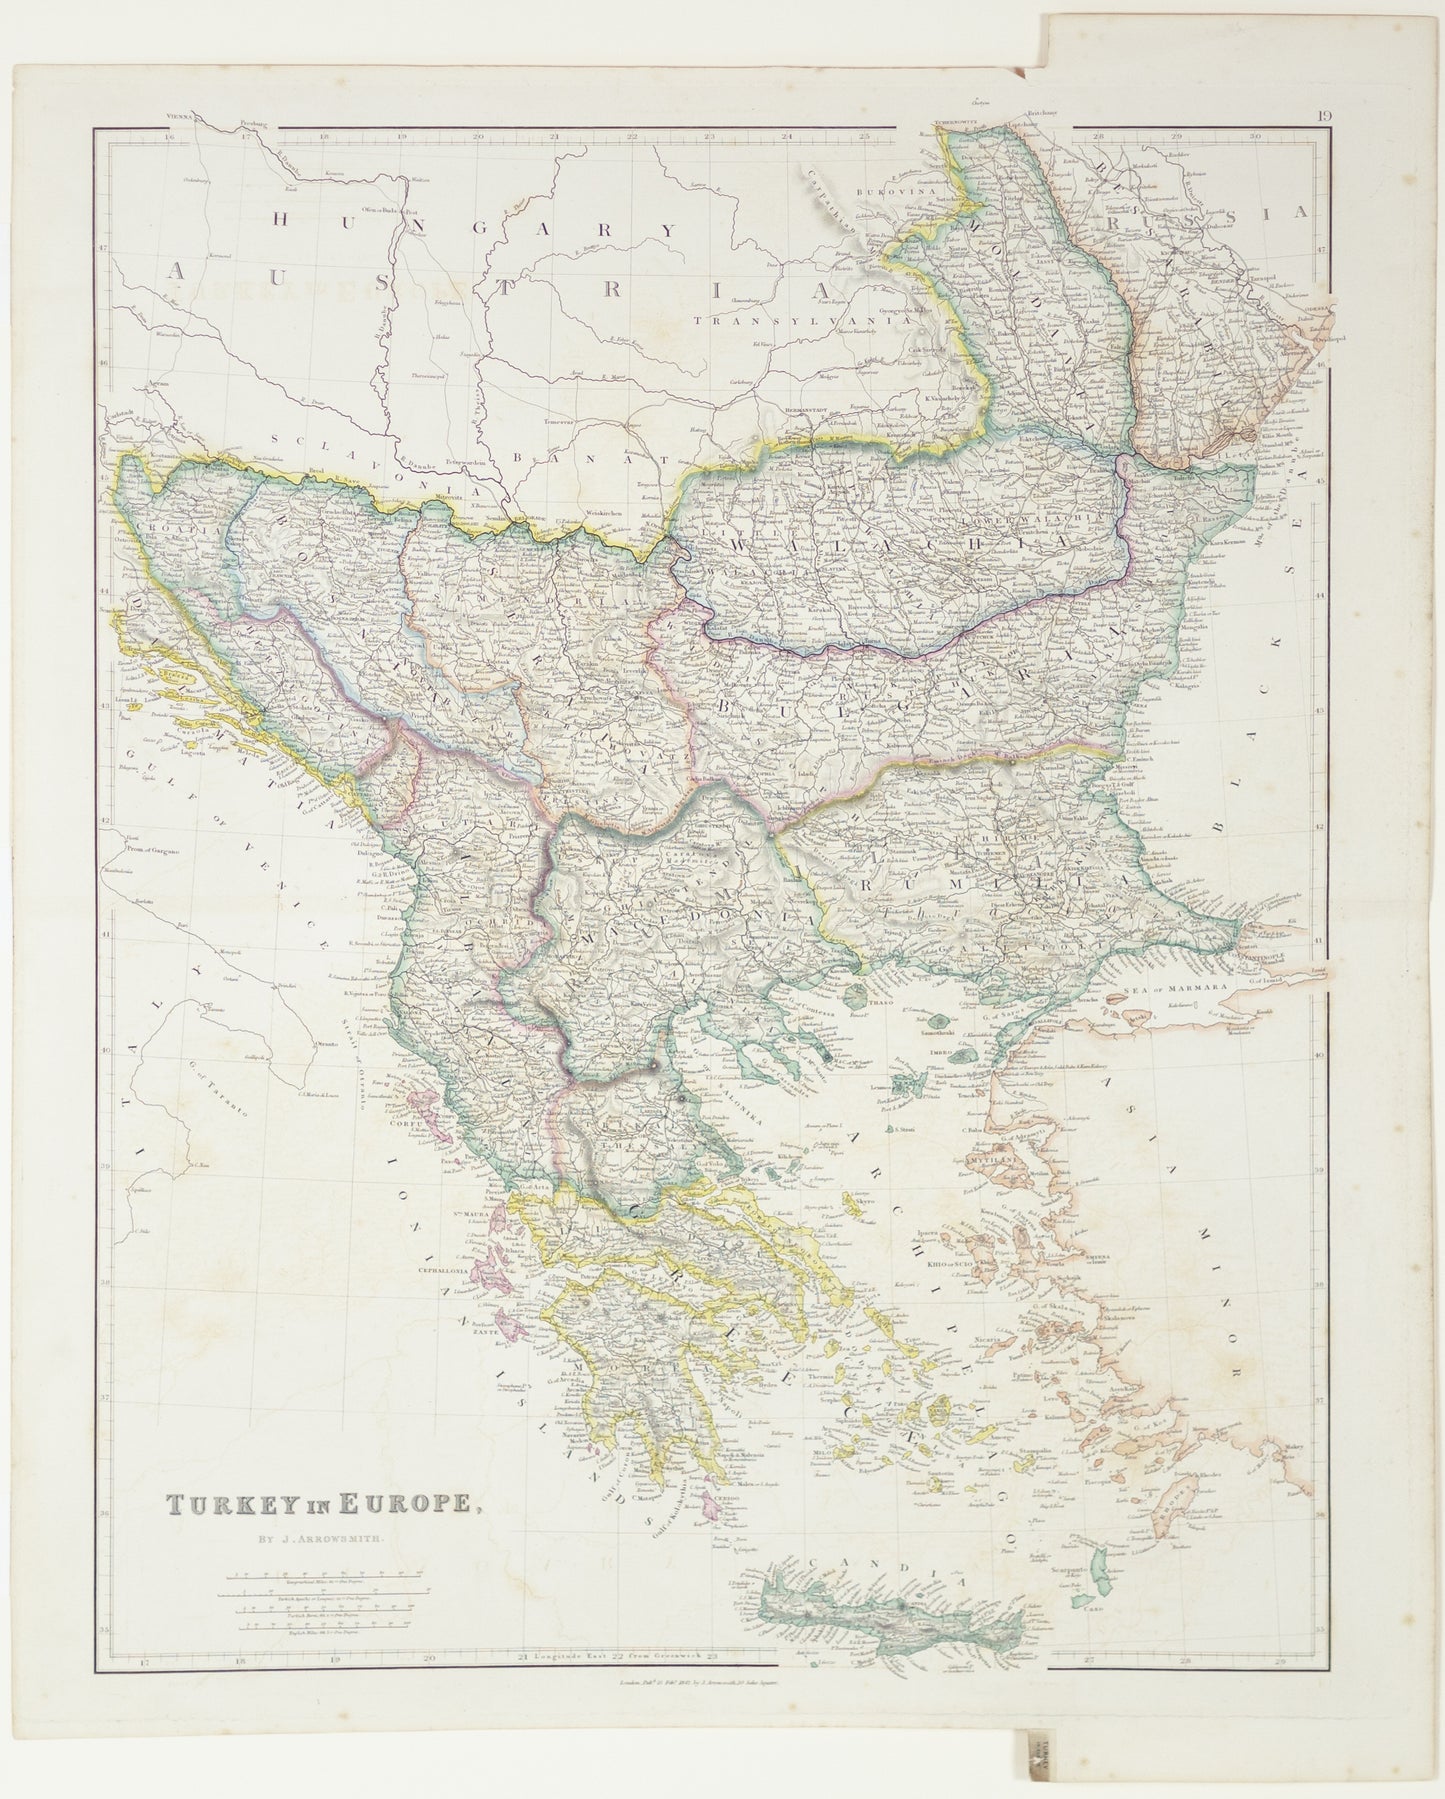 Arrowsmith, J. Turkey in Europe. London: 1844